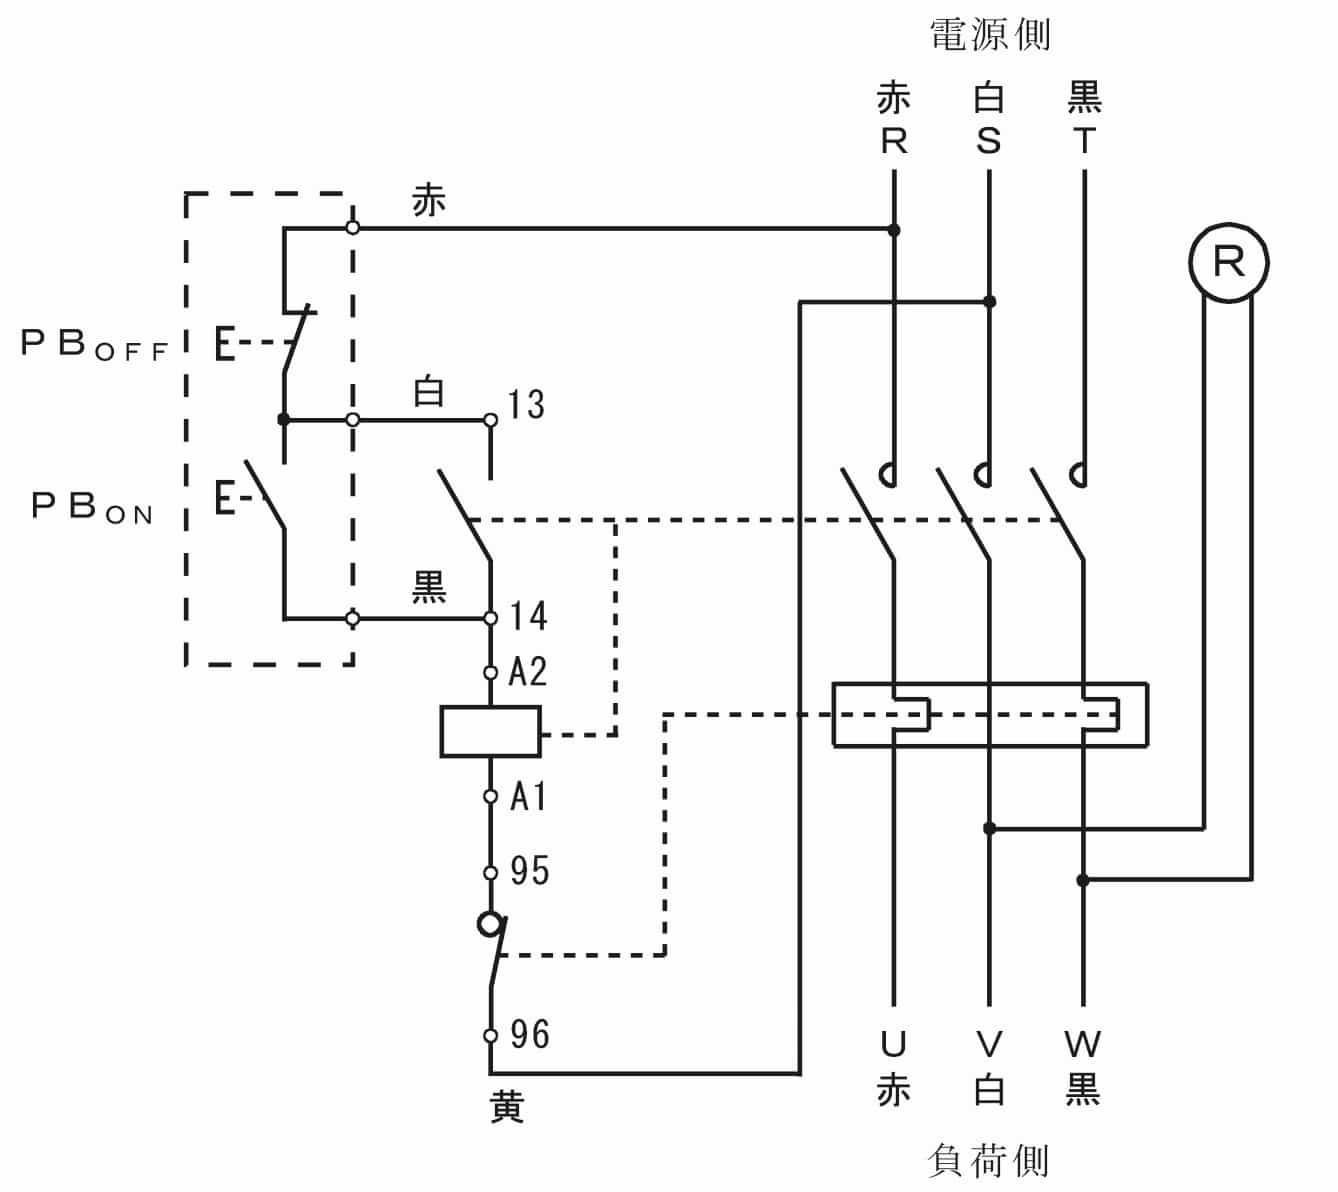 第一種電気工事士の技能試験の試験問題No.8の試験問題の回路図